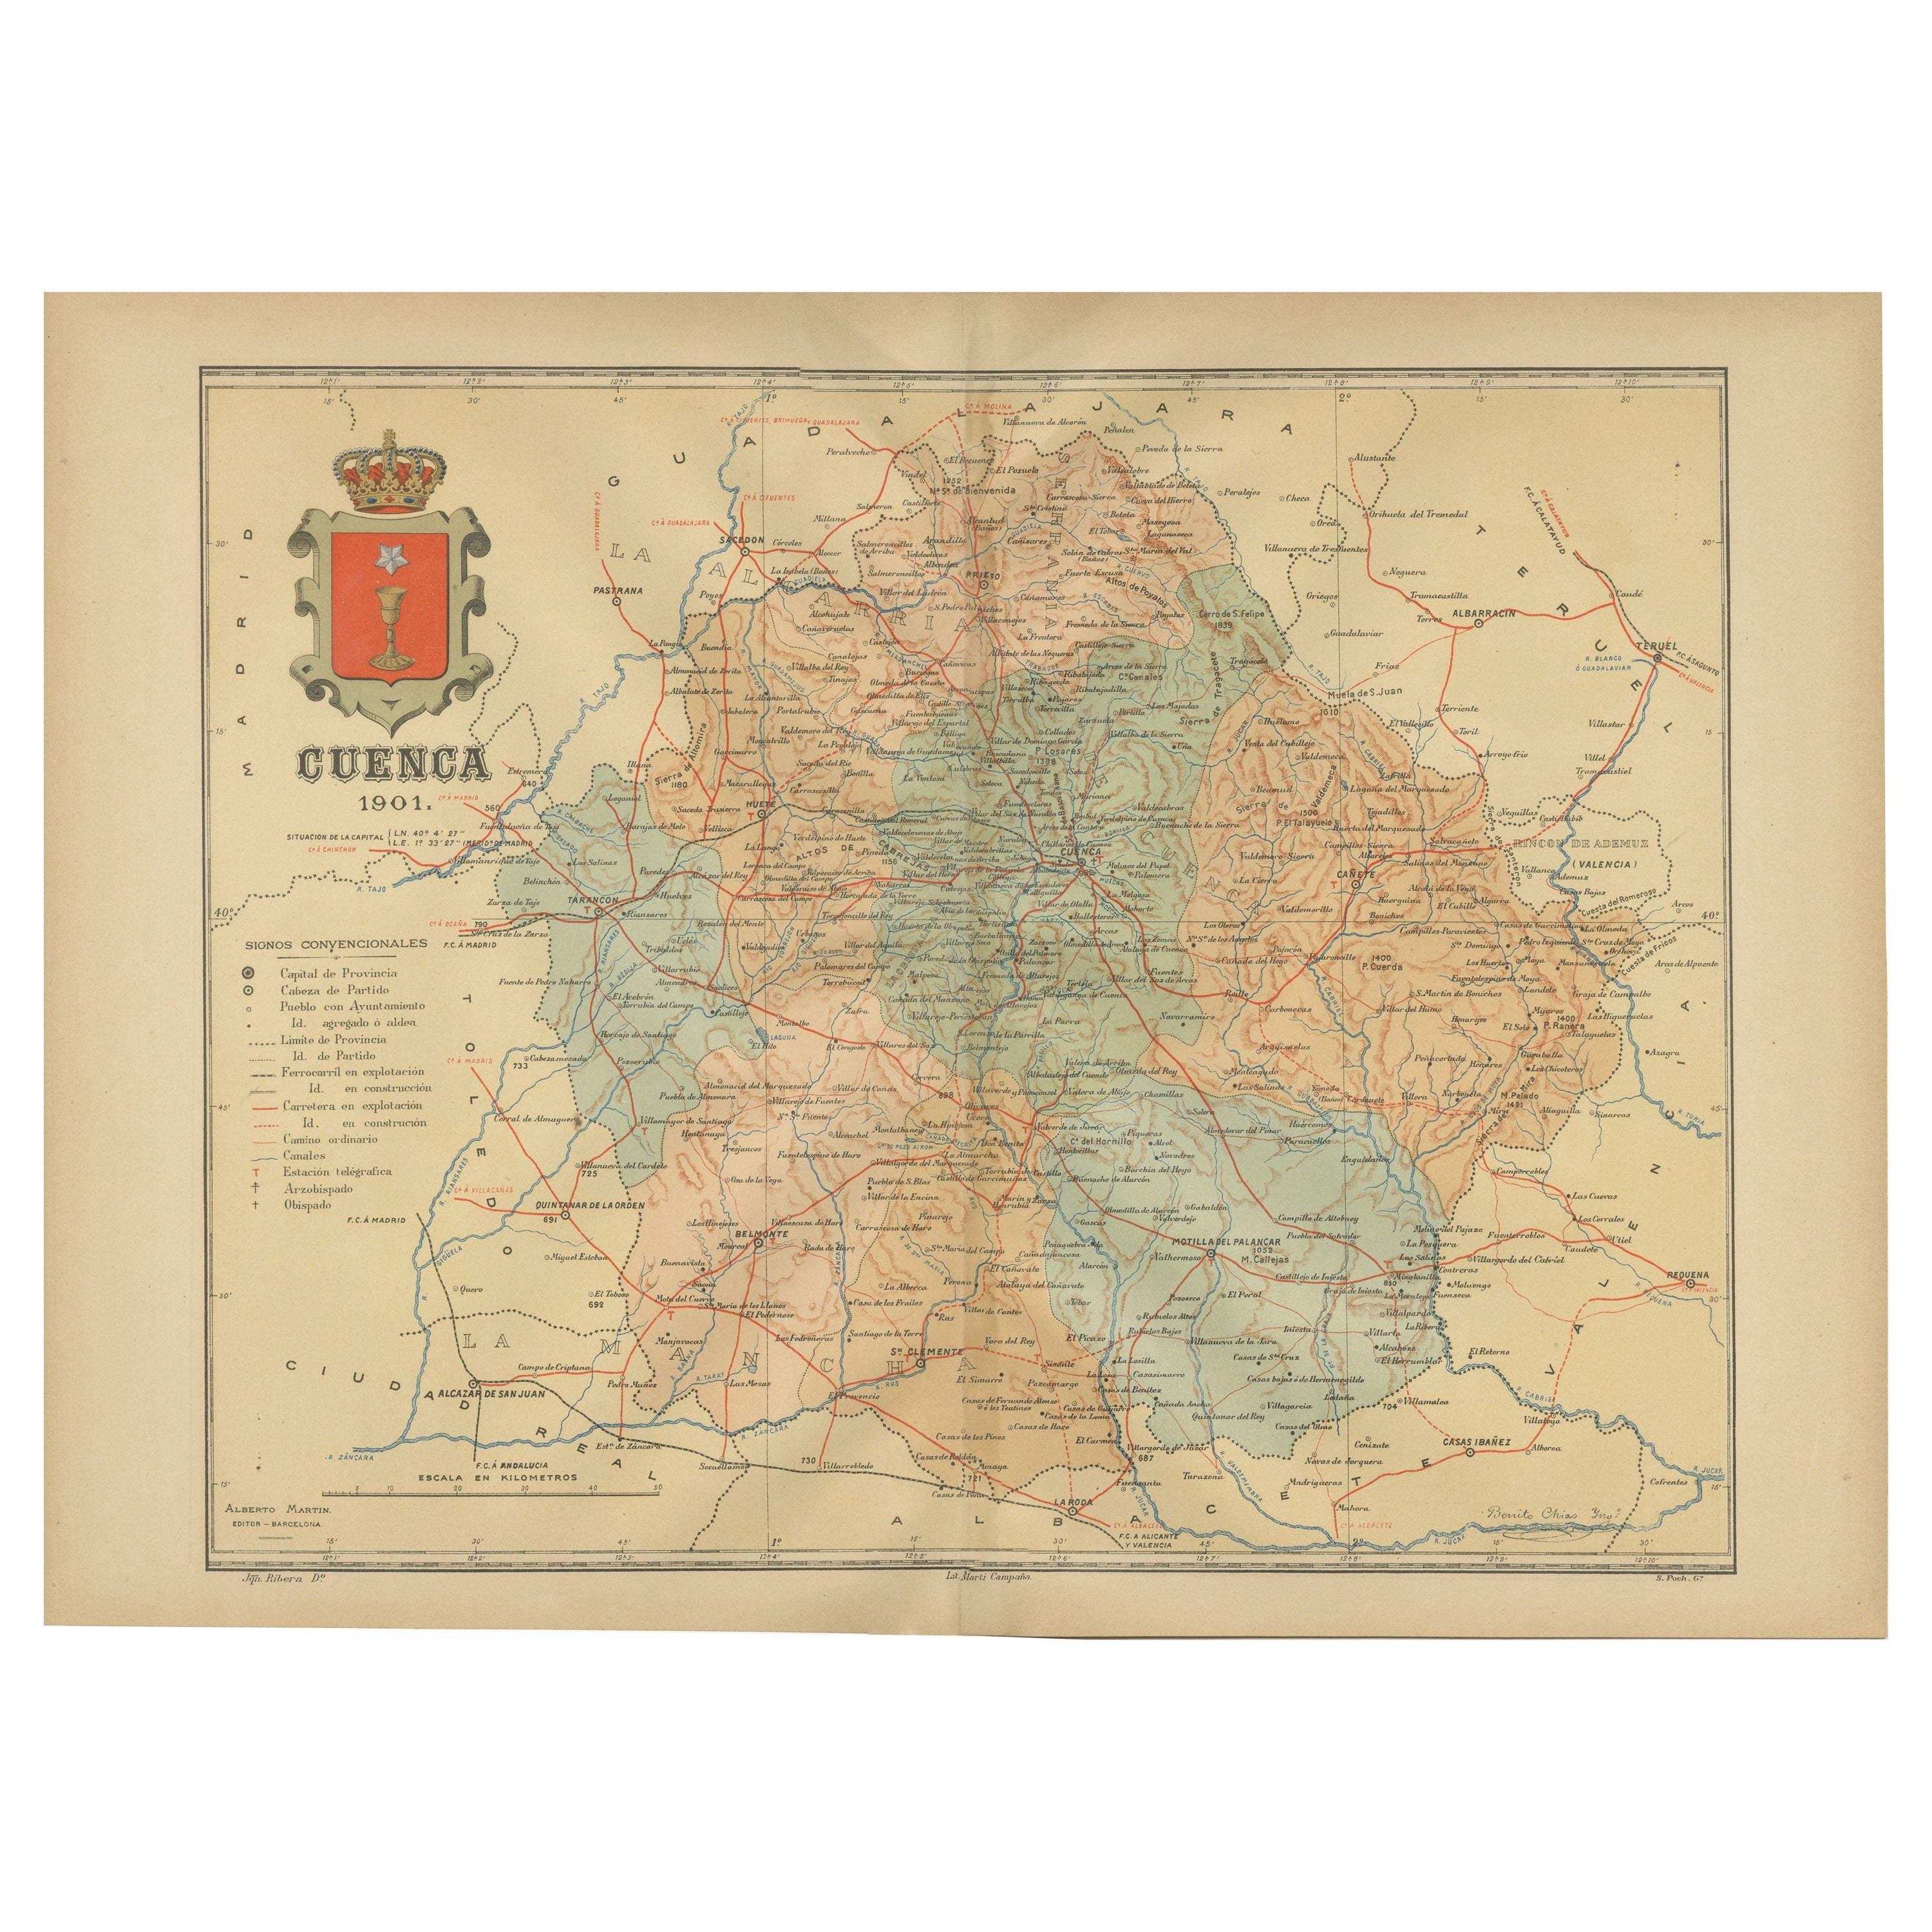 Cuenca 1901: Eine historische kartographische Darstellung der Hochebenen und Berge